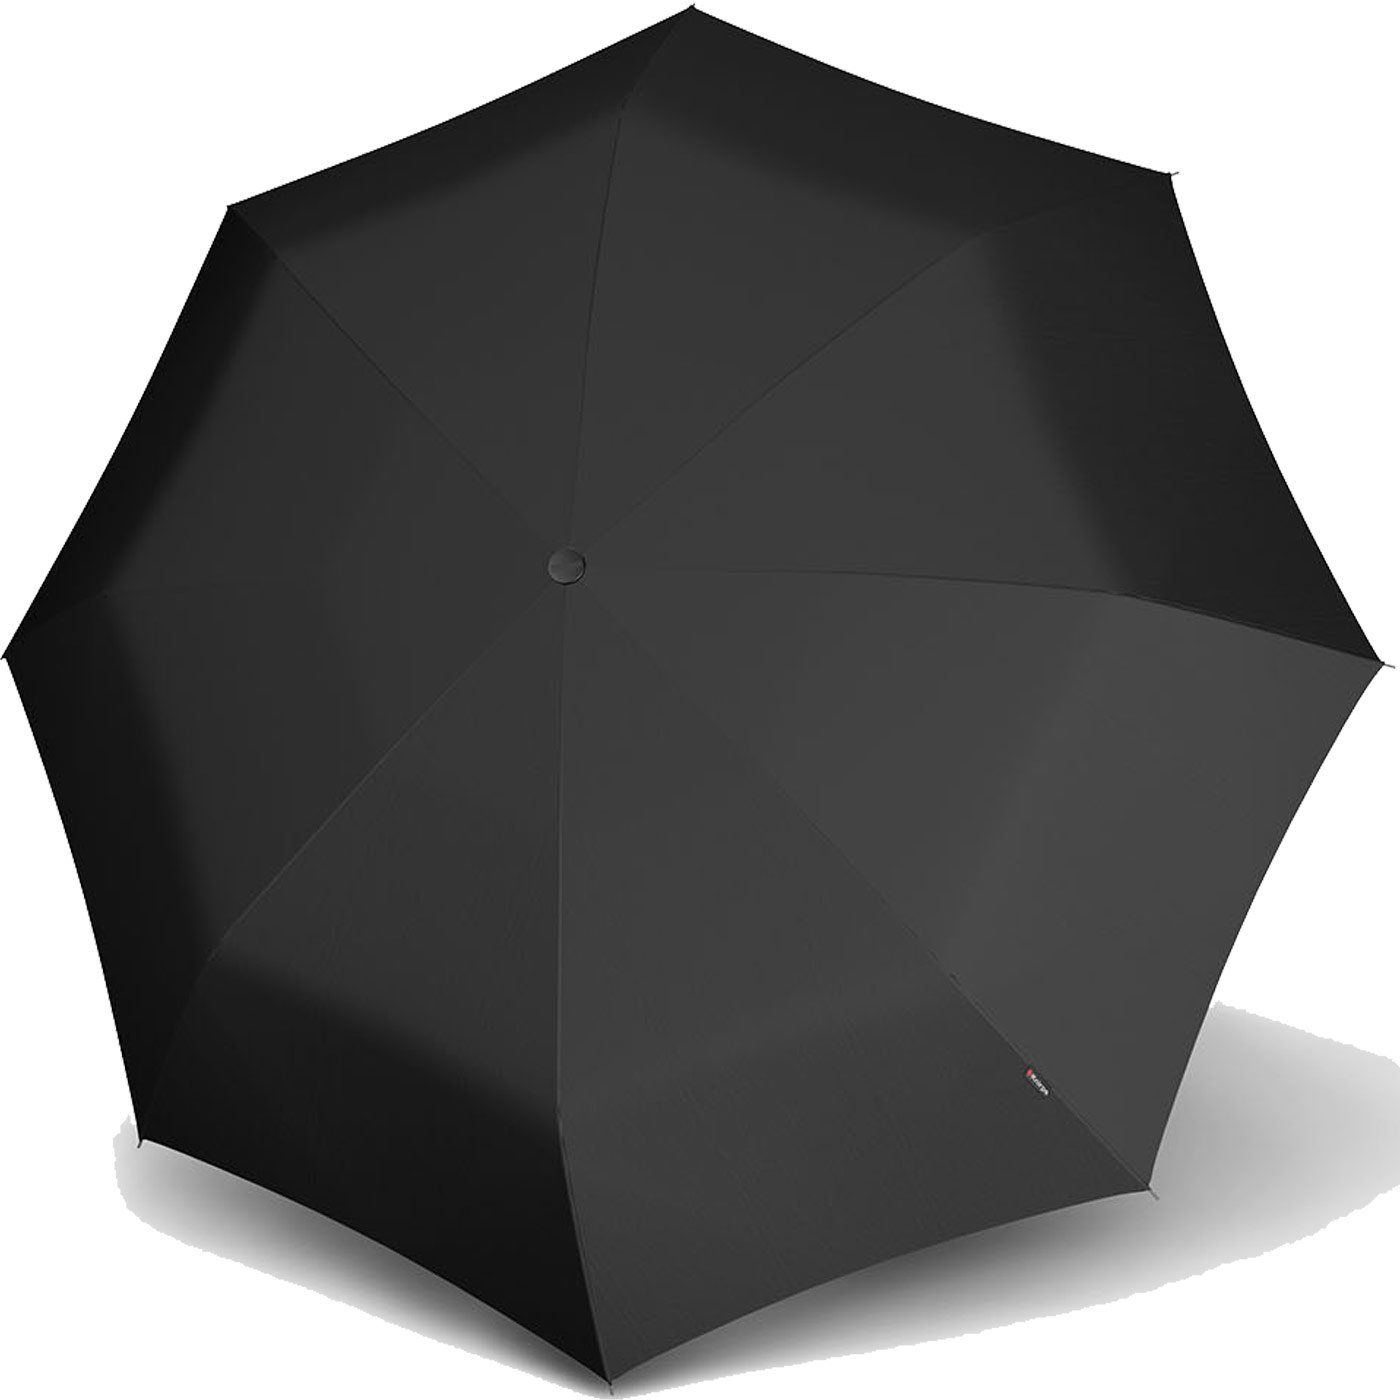 Knirps® Taschenregenschirm kleiner, leichter, kompakter Schirm für Damen, gut geschützt durch das Hard-Case-Etui